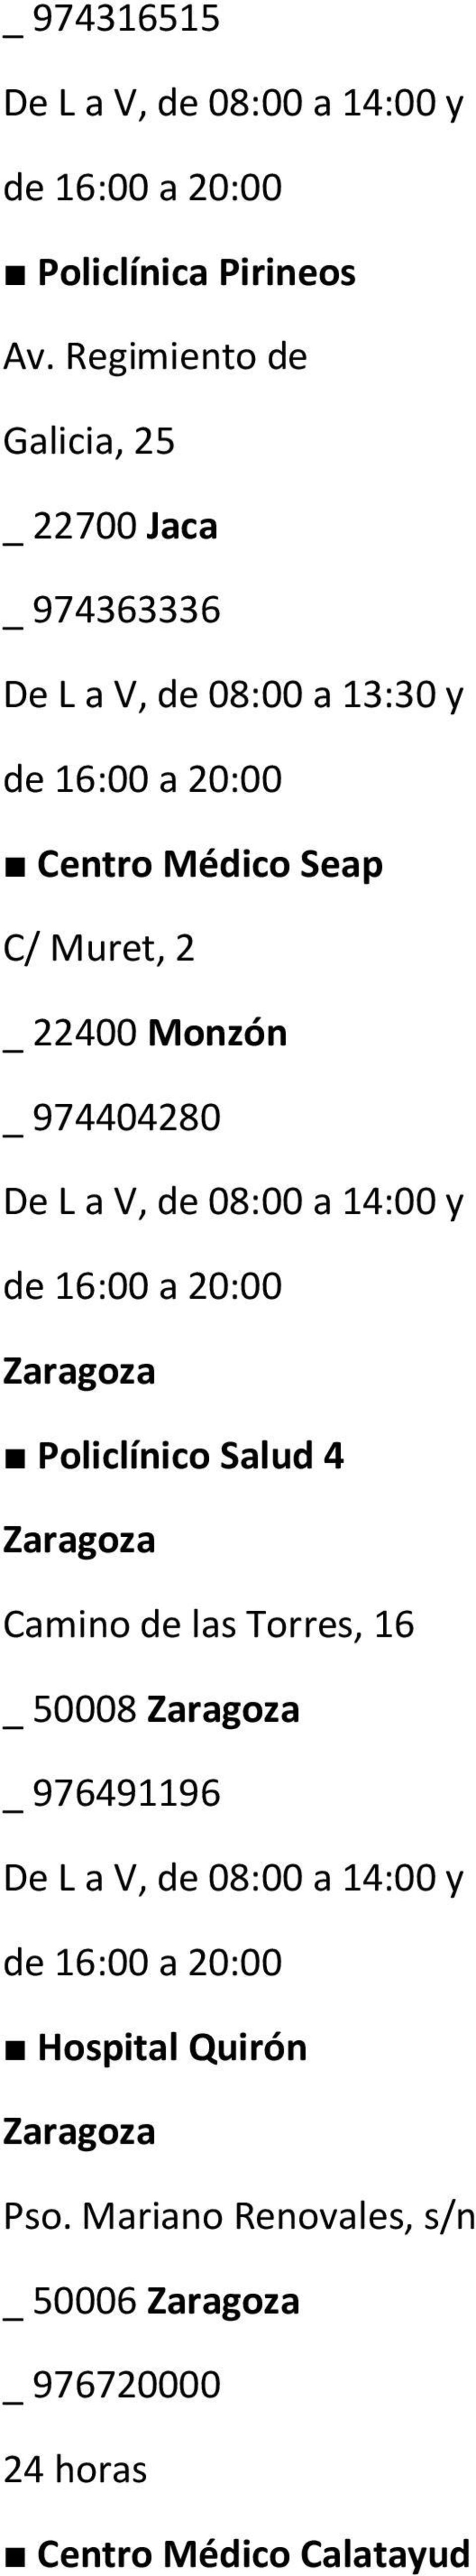 22400 Monzón _ 974404280 De L a V, de 08:00 a 14:00 y de 16:00 a 20:00 Zaragoza Policlínico Salud 4 Zaragoza Camino de las Torres,